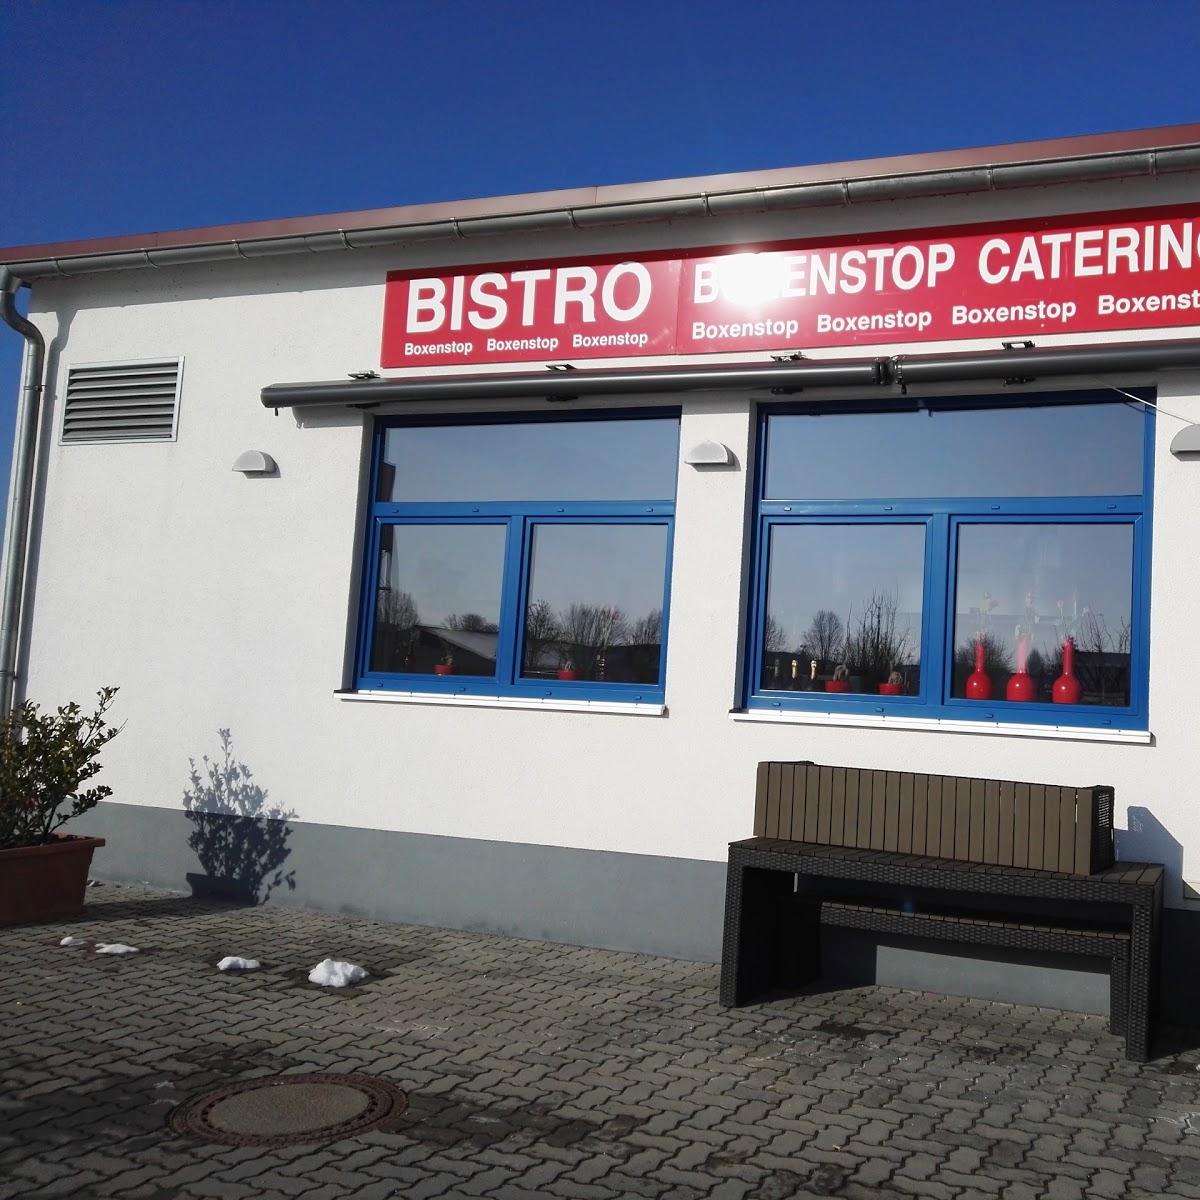 Restaurant "Boxenstop Bistro & more..." in Ismaning